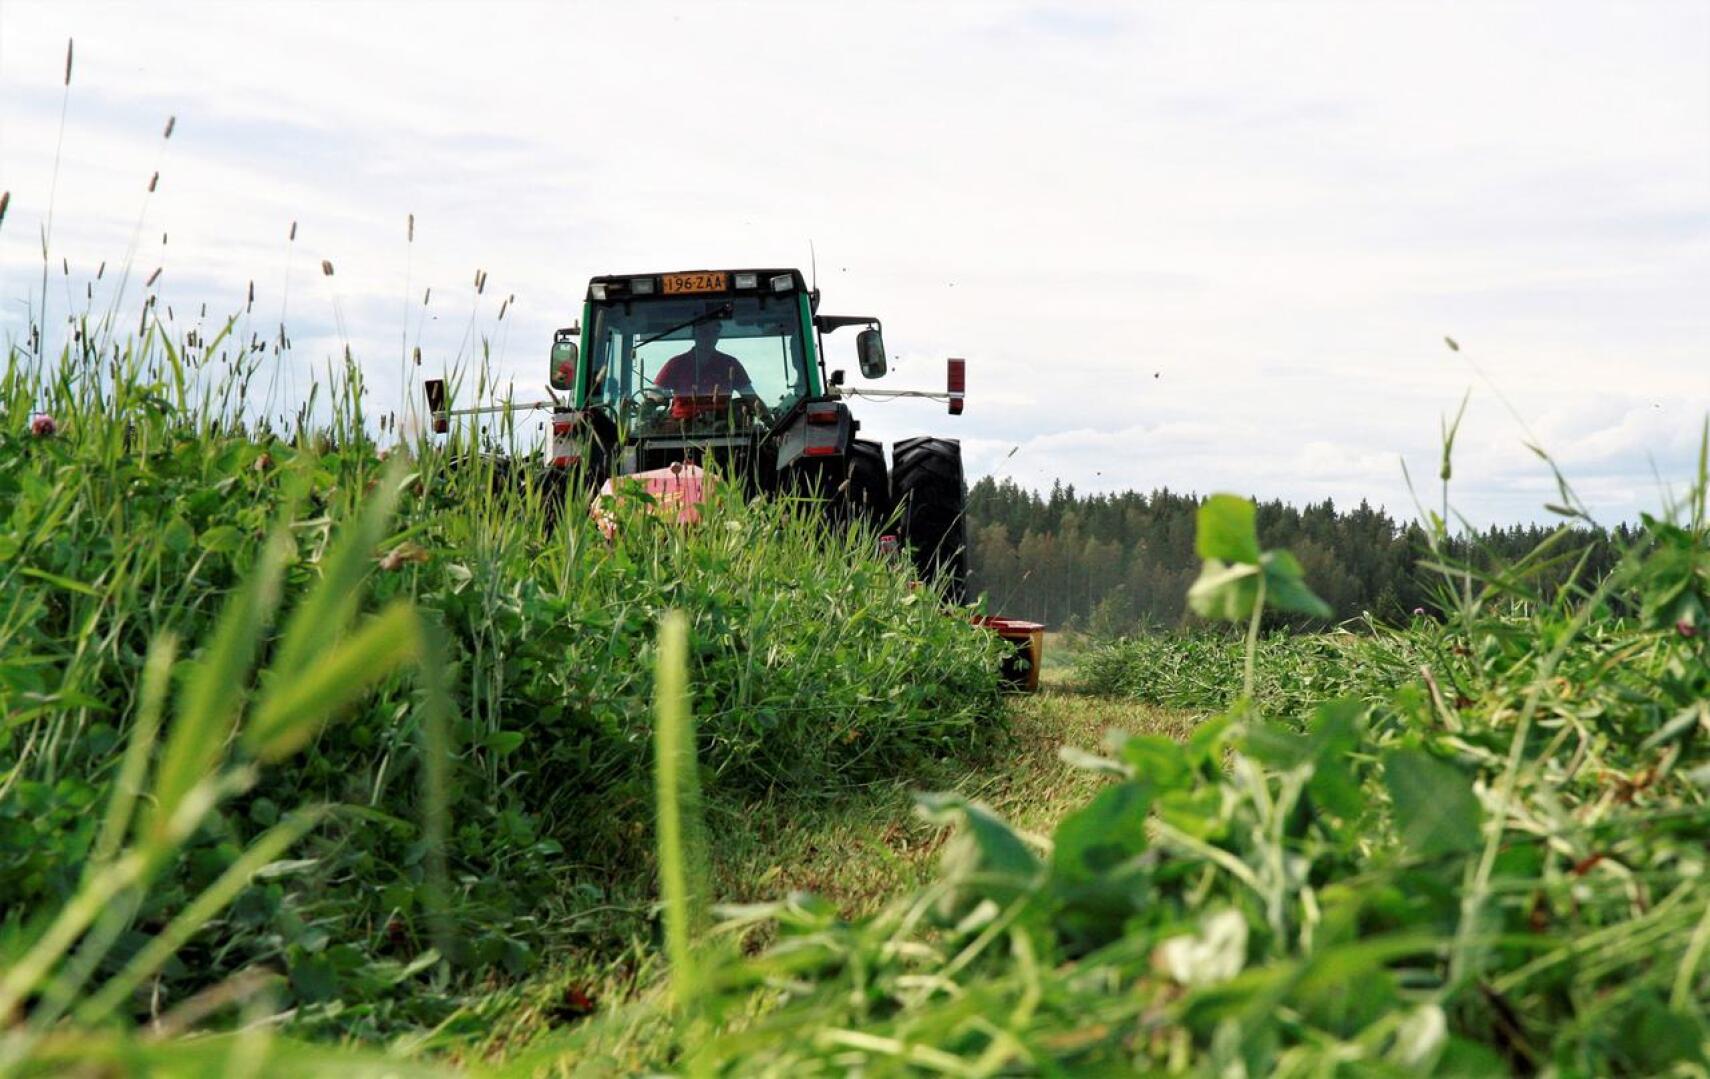 Nivalan maaseutunäyttelyssä on mahdollista seurata uusimman nurmenkorjuutekniikan toimintaa.